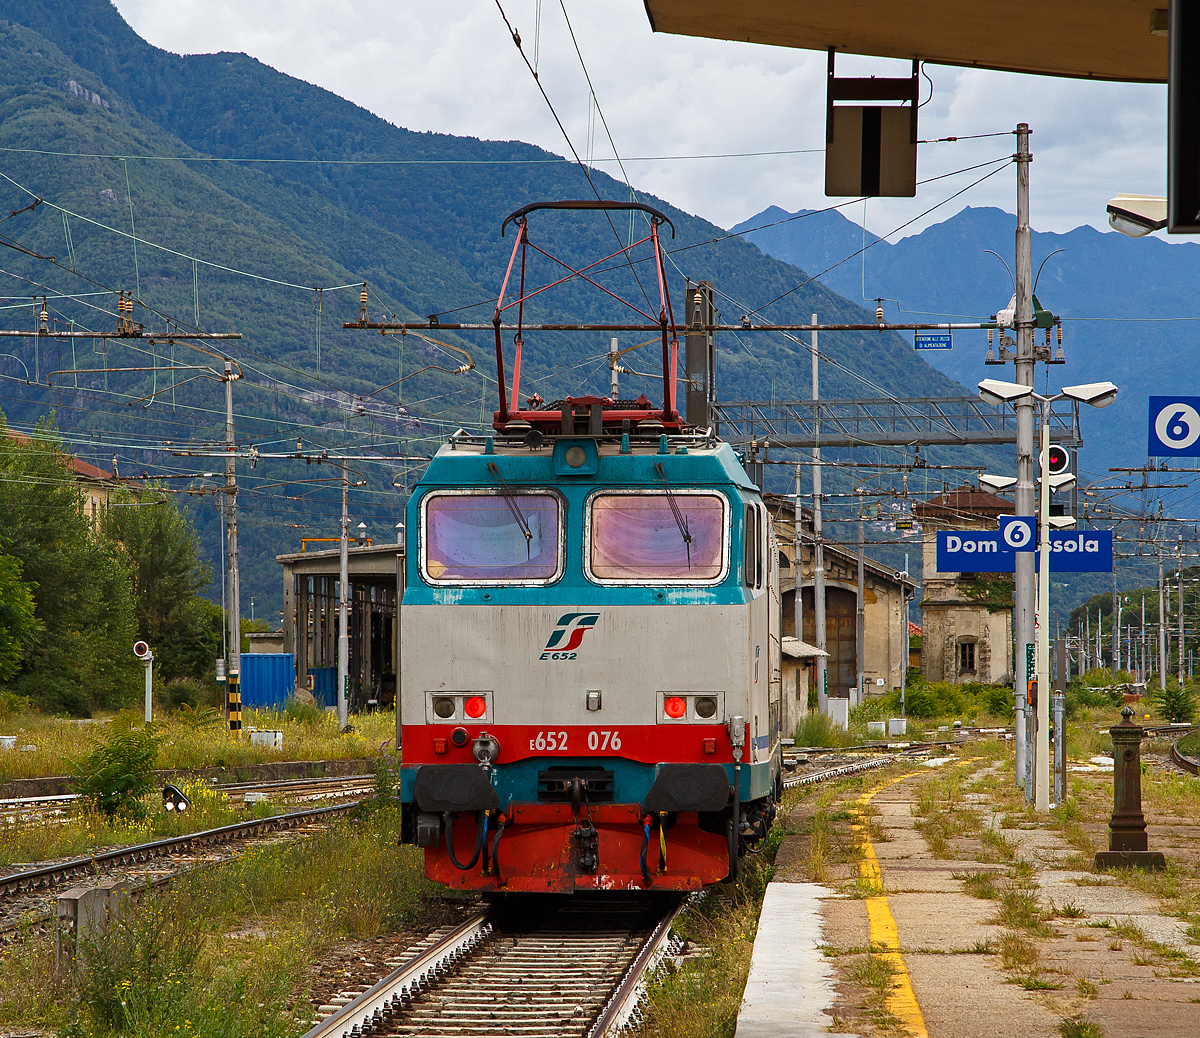 Die E.652 076 (91 83 2652 076-7 I-MIR) der Mercitalia Rail Srl fährt am 15.09.2017 aus dem Güterbereich vom Bahnhof Domodossolain Richtung Süden. Die Mercitalia Rail Srl, eine 100%tige Tochter der Ferrovie dello Stato Italiane (FS, deutsch Italienische Staatseisenbahnen).
